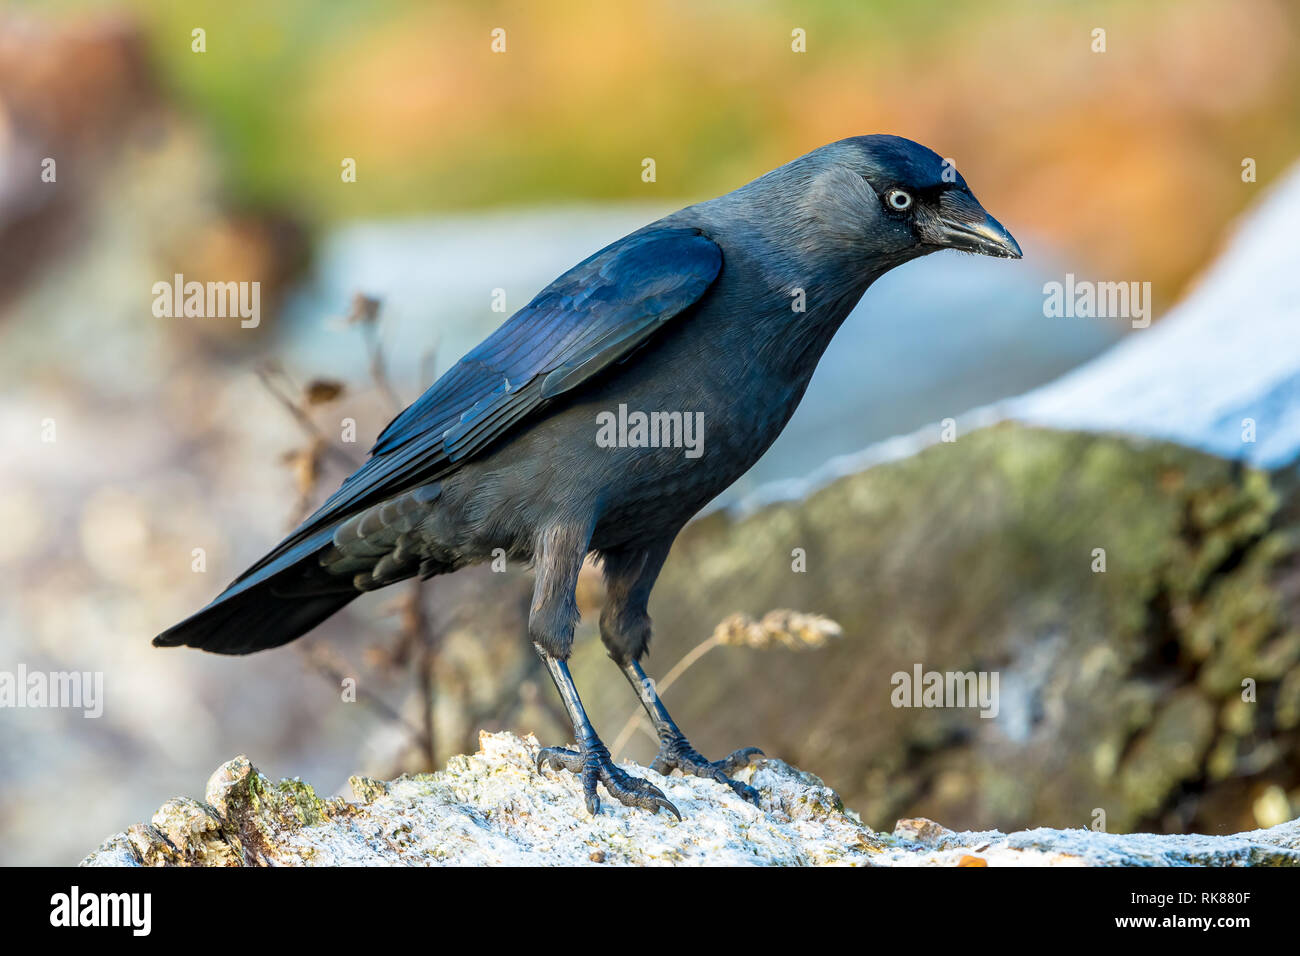 Dohle (Corvus monedula) mit schönen blauen Gefieder und grauen Nacken, an einem frostigen Morgen im natürlichen Lebensraum Wald. Nach rechts. Landschaft. Stockfoto